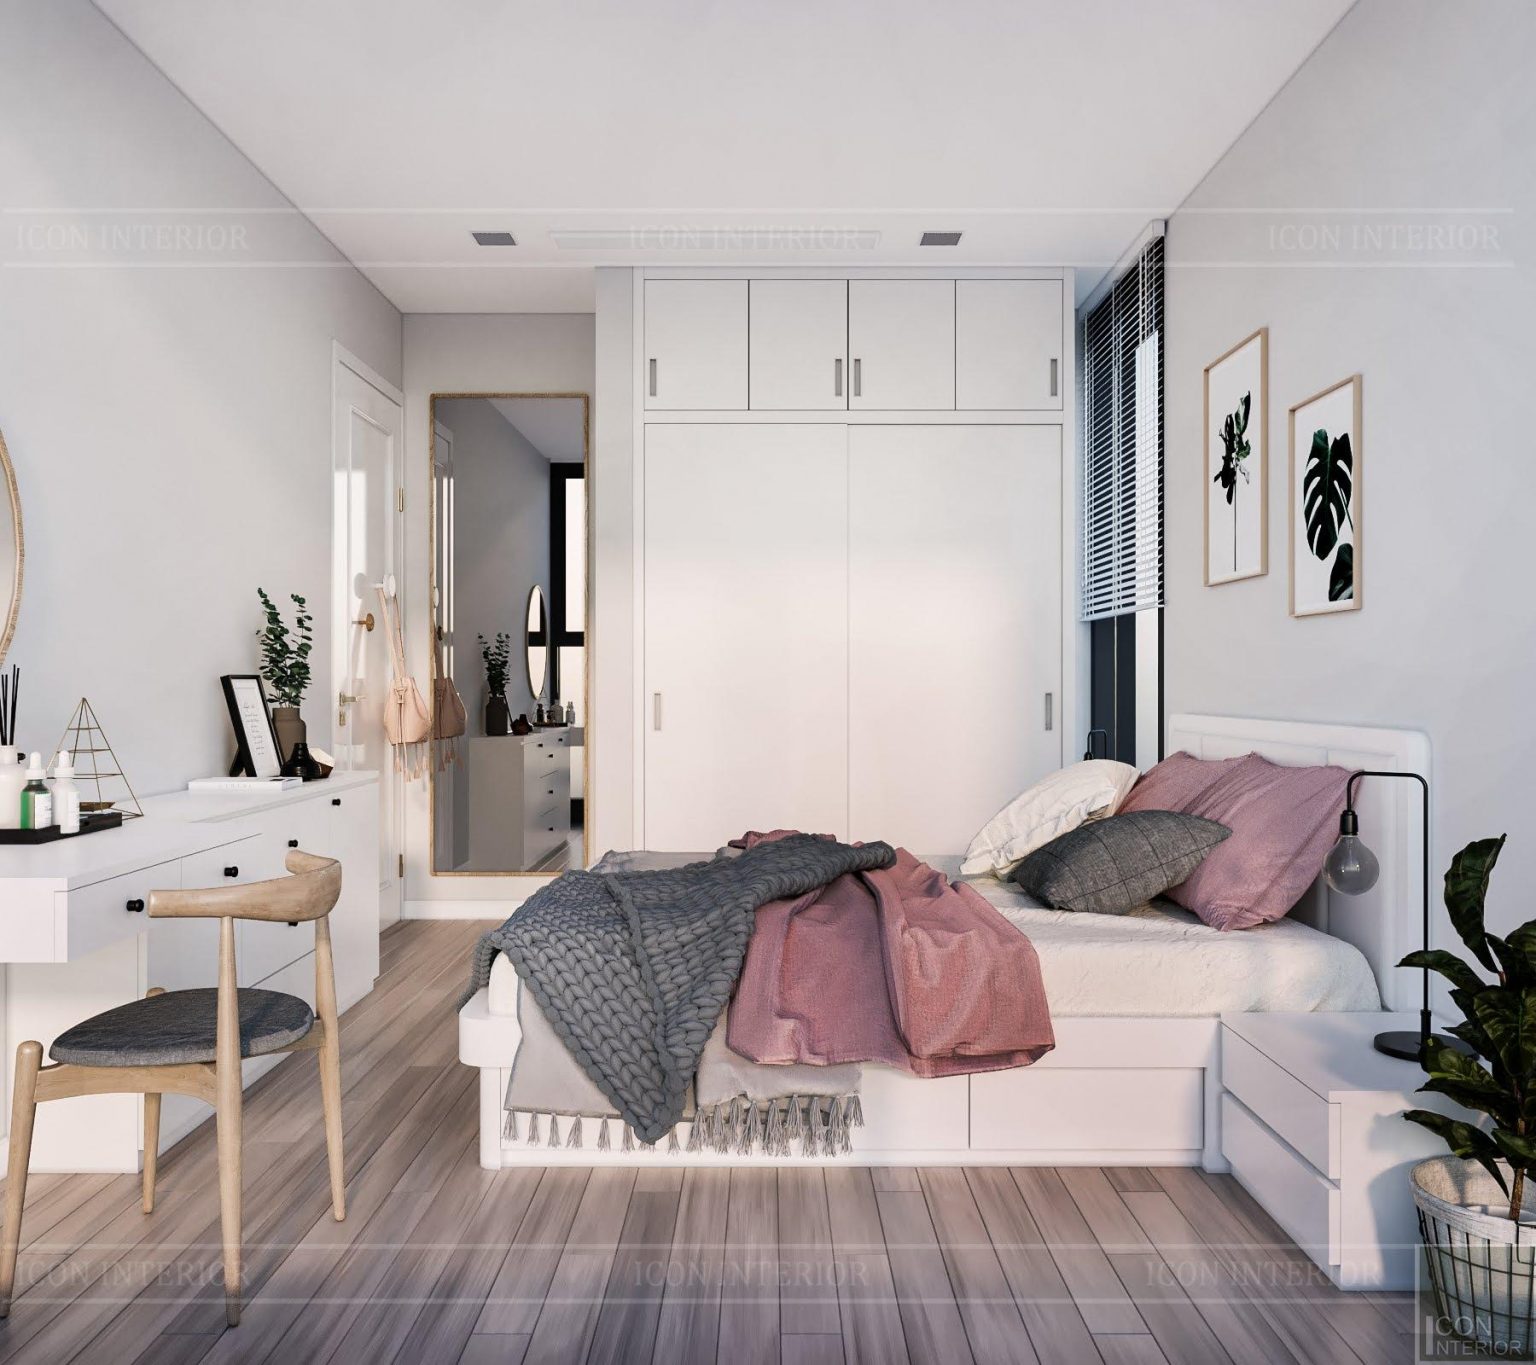 Thiết kế nội thất phong cách Scandinavian cùng ICON INTERIOR